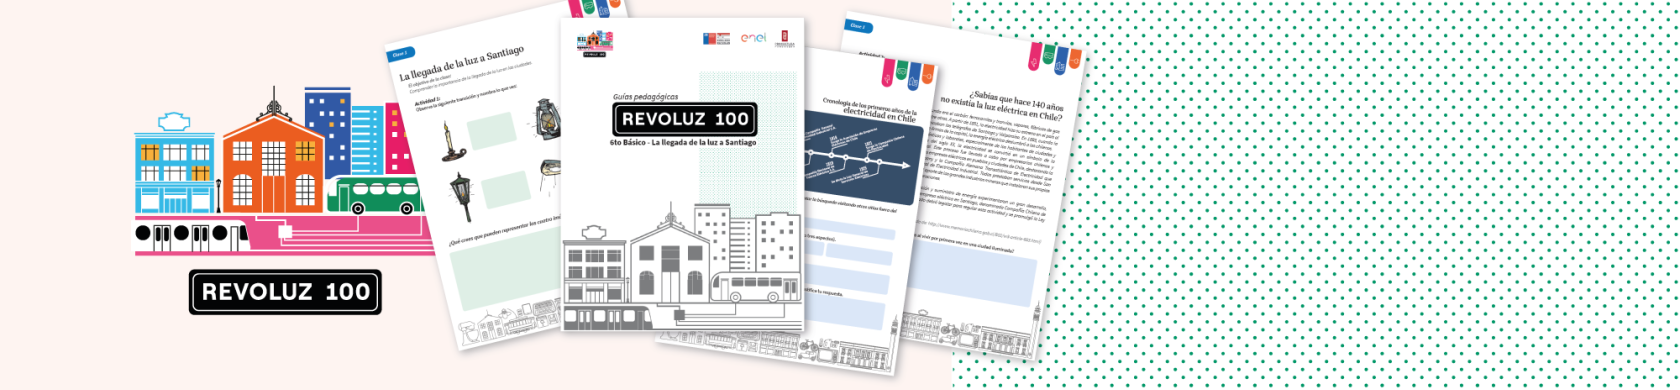 Revoluz100: enseña la historia y el patrimonio cultural de la electricidad en Chile con las nuevas guías pedagógicas